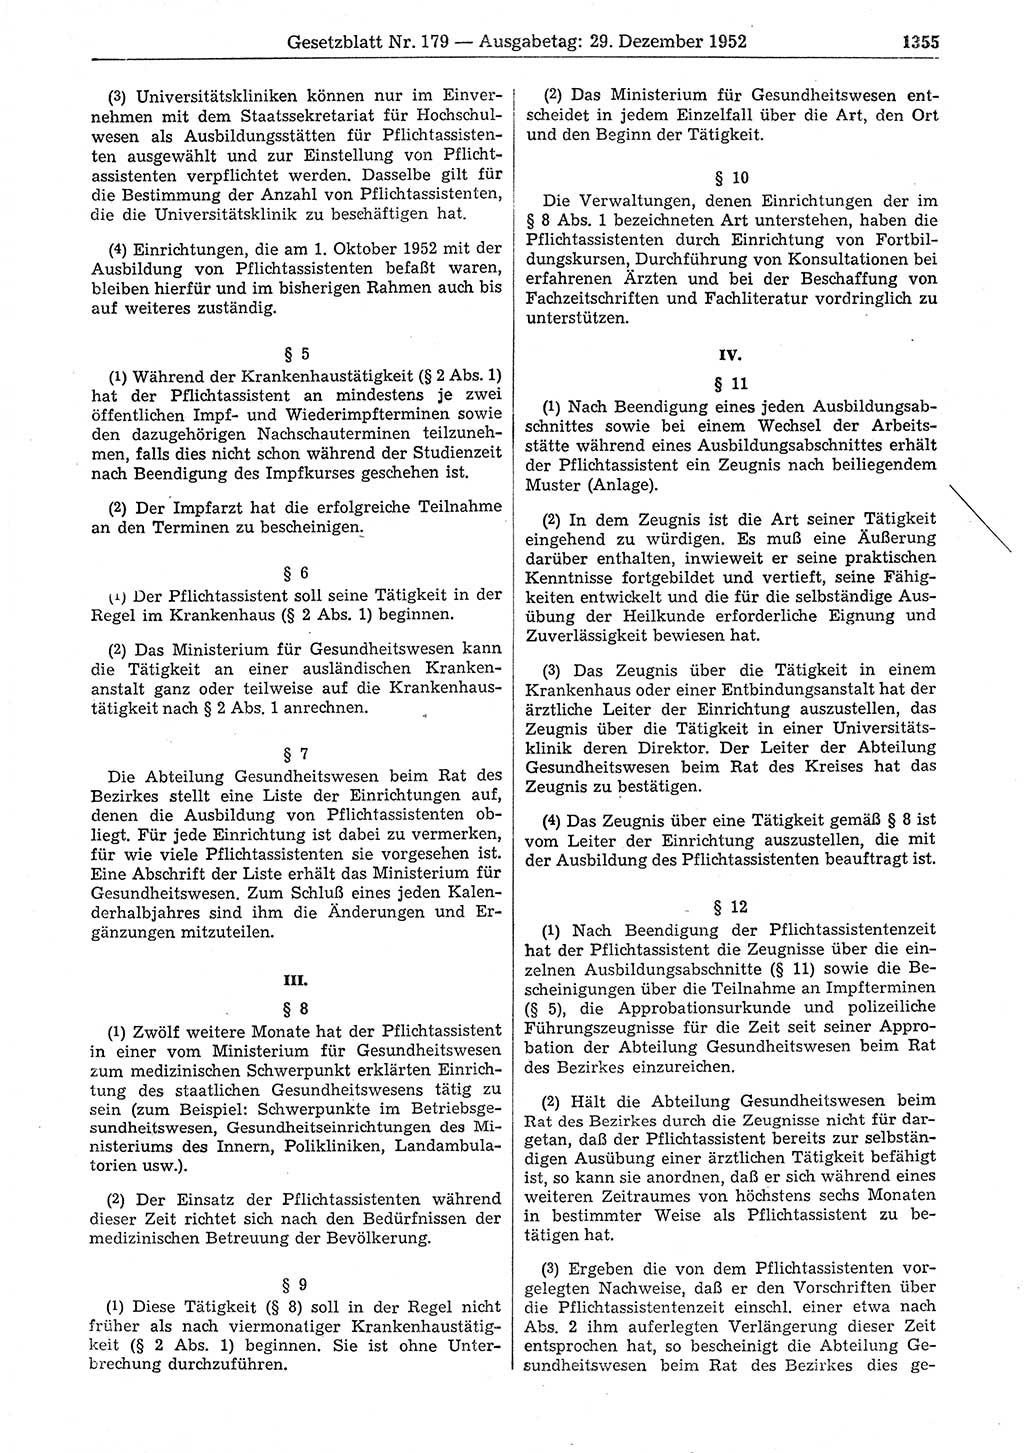 Gesetzblatt (GBl.) der Deutschen Demokratischen Republik (DDR) 1952, Seite 1355 (GBl. DDR 1952, S. 1355)